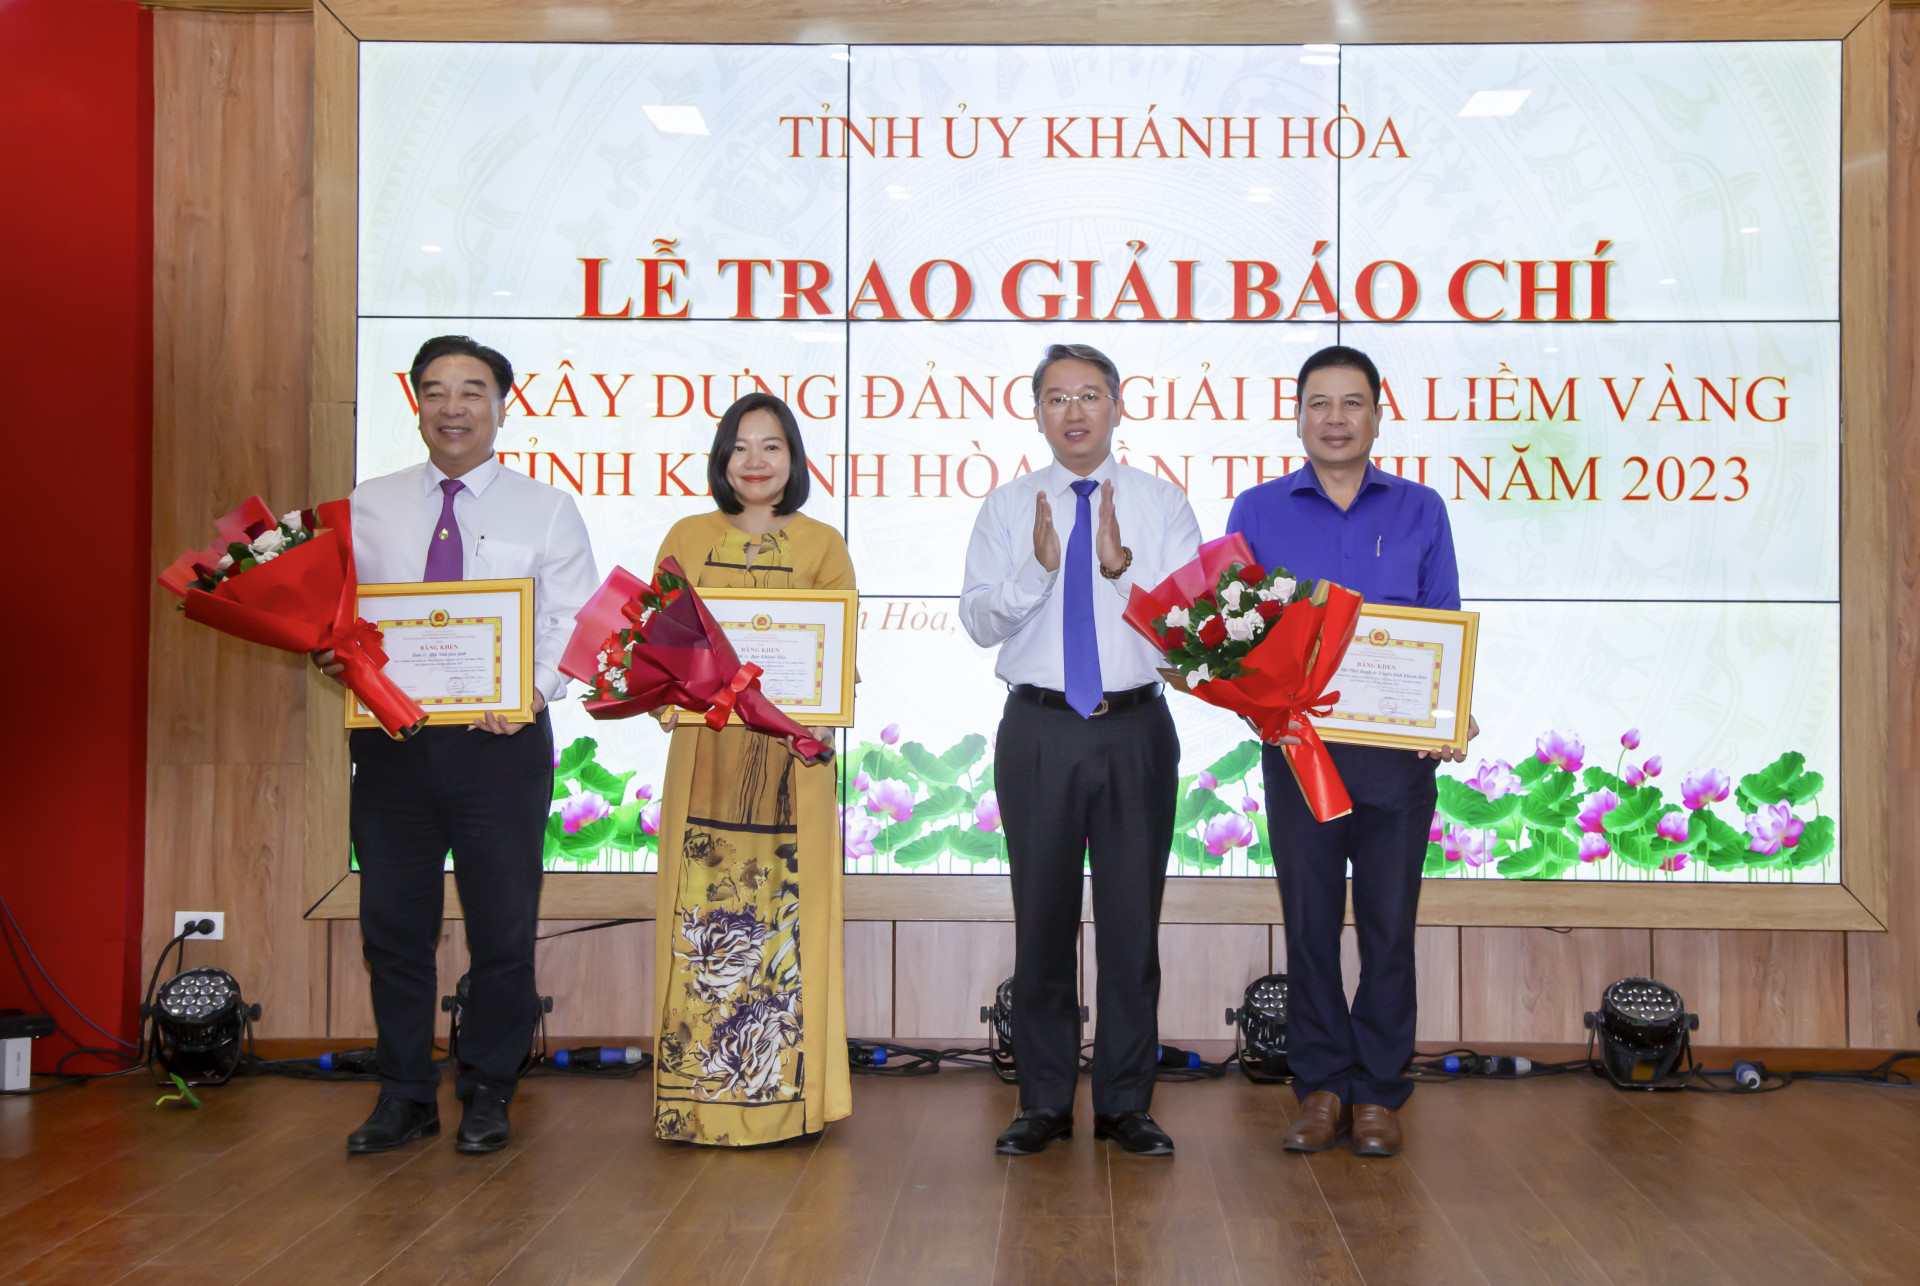 Bí thư Tỉnh ủy Nguyễn Hải Ninh trao giải tập thể Giải báo chí về xây dựng Đảng tỉnh năm 2023 cho Báo Khánh Hòa và các đơn vị báo chí trong tỉnh.